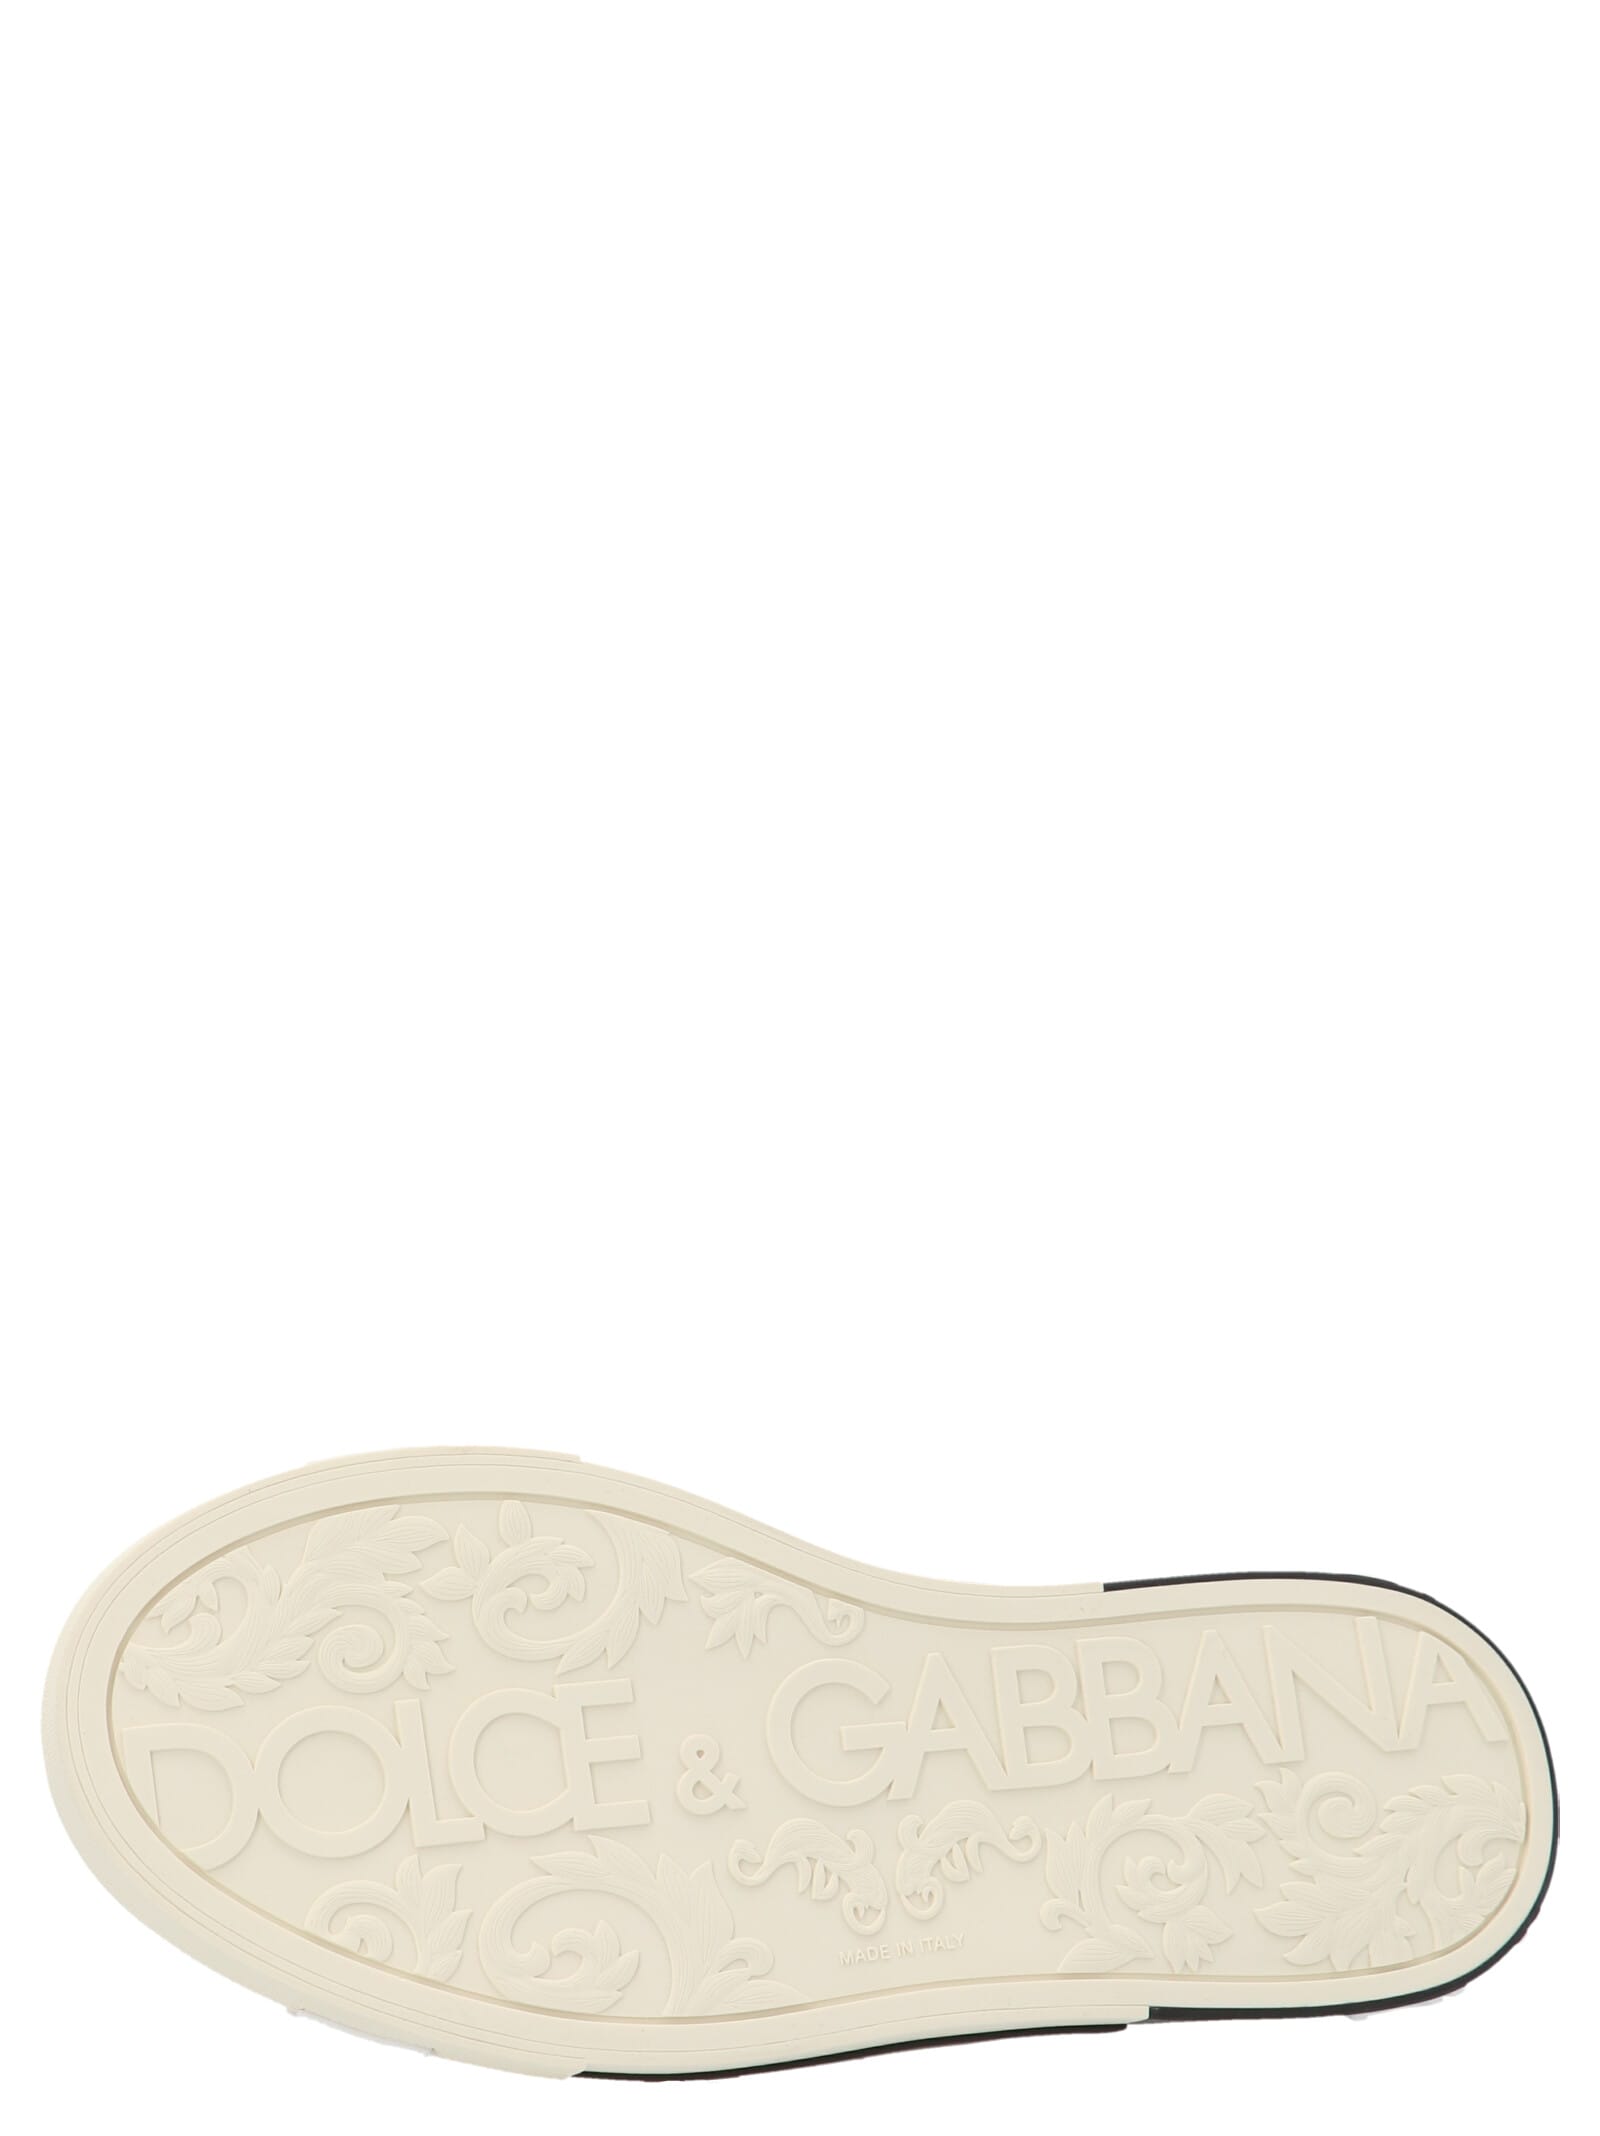 Shop Dolce & Gabbana New Portofino Shoes In White/gold